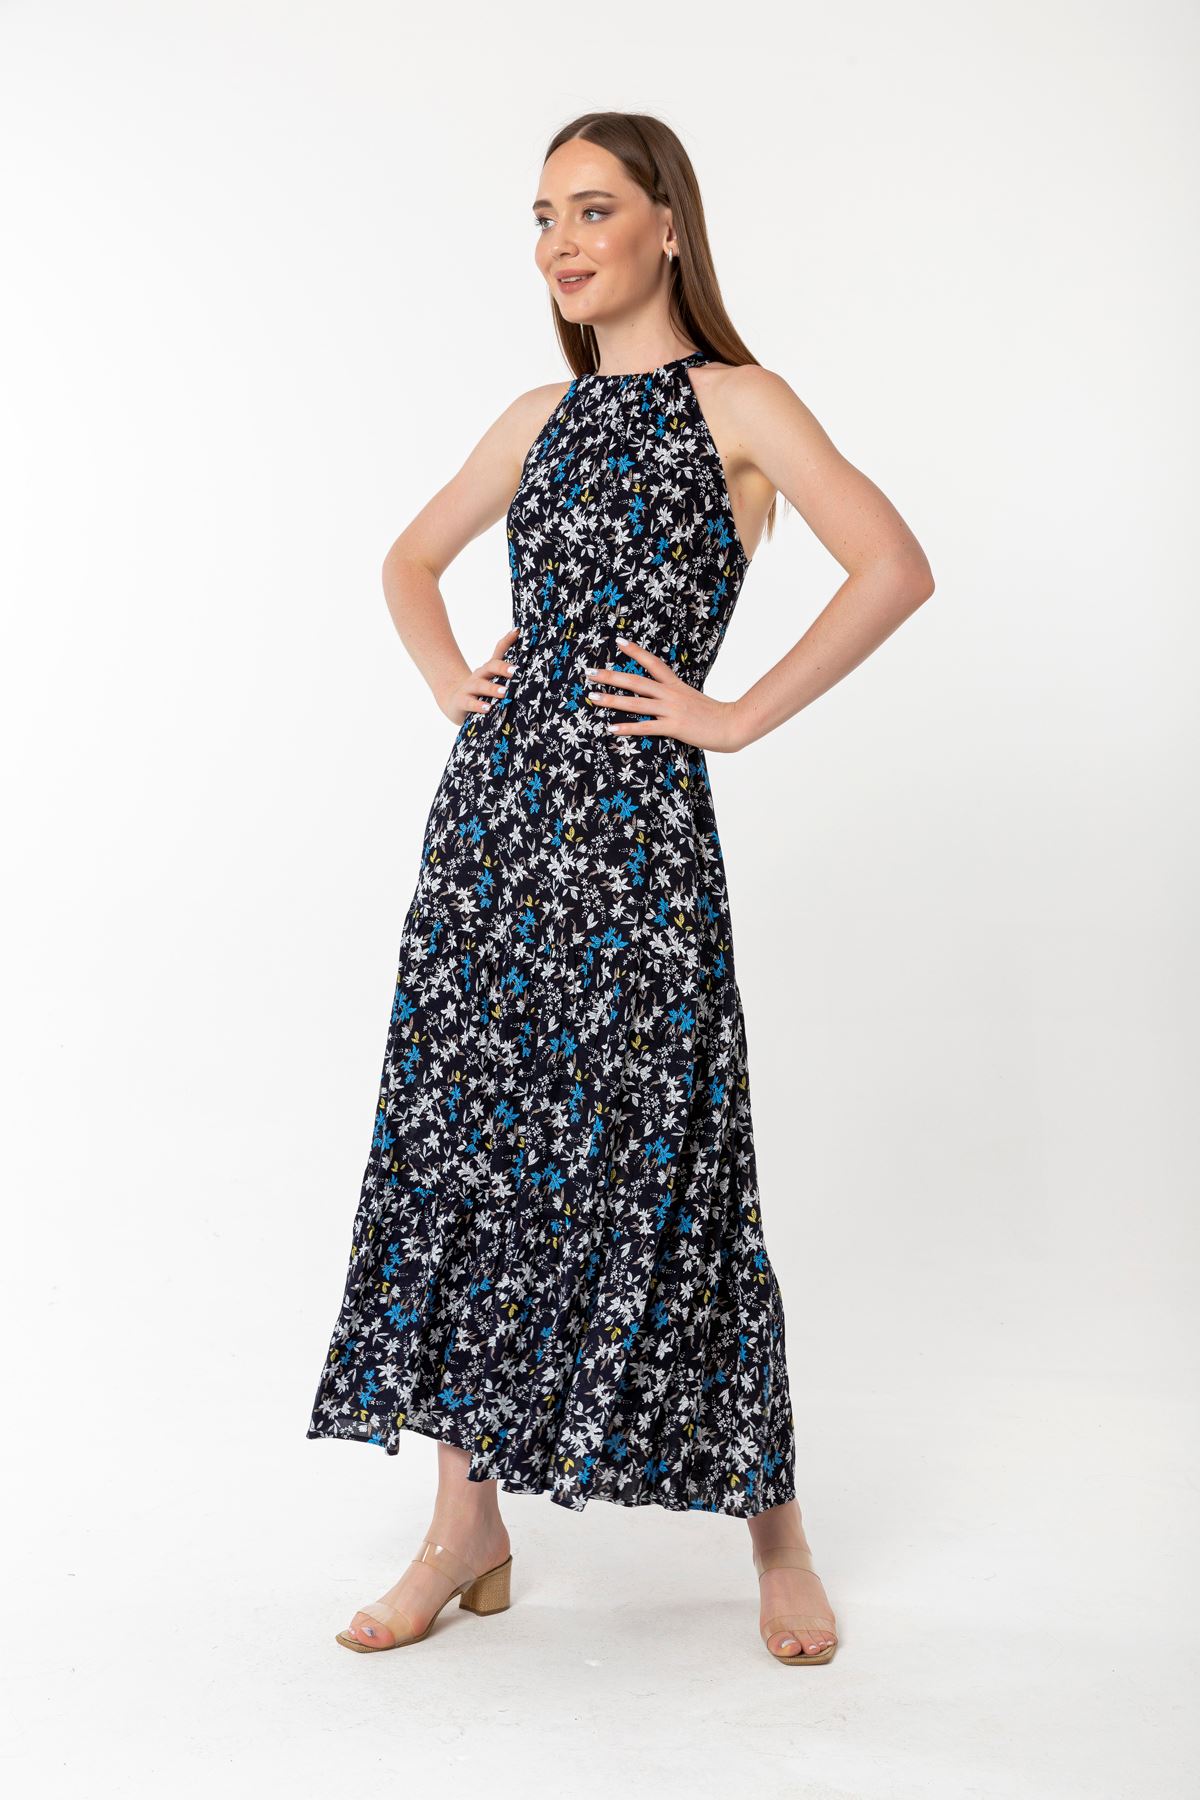 Viscose Fabric Queen Anna Neck Crispy Floral Print Women Dress - Navy Blue 